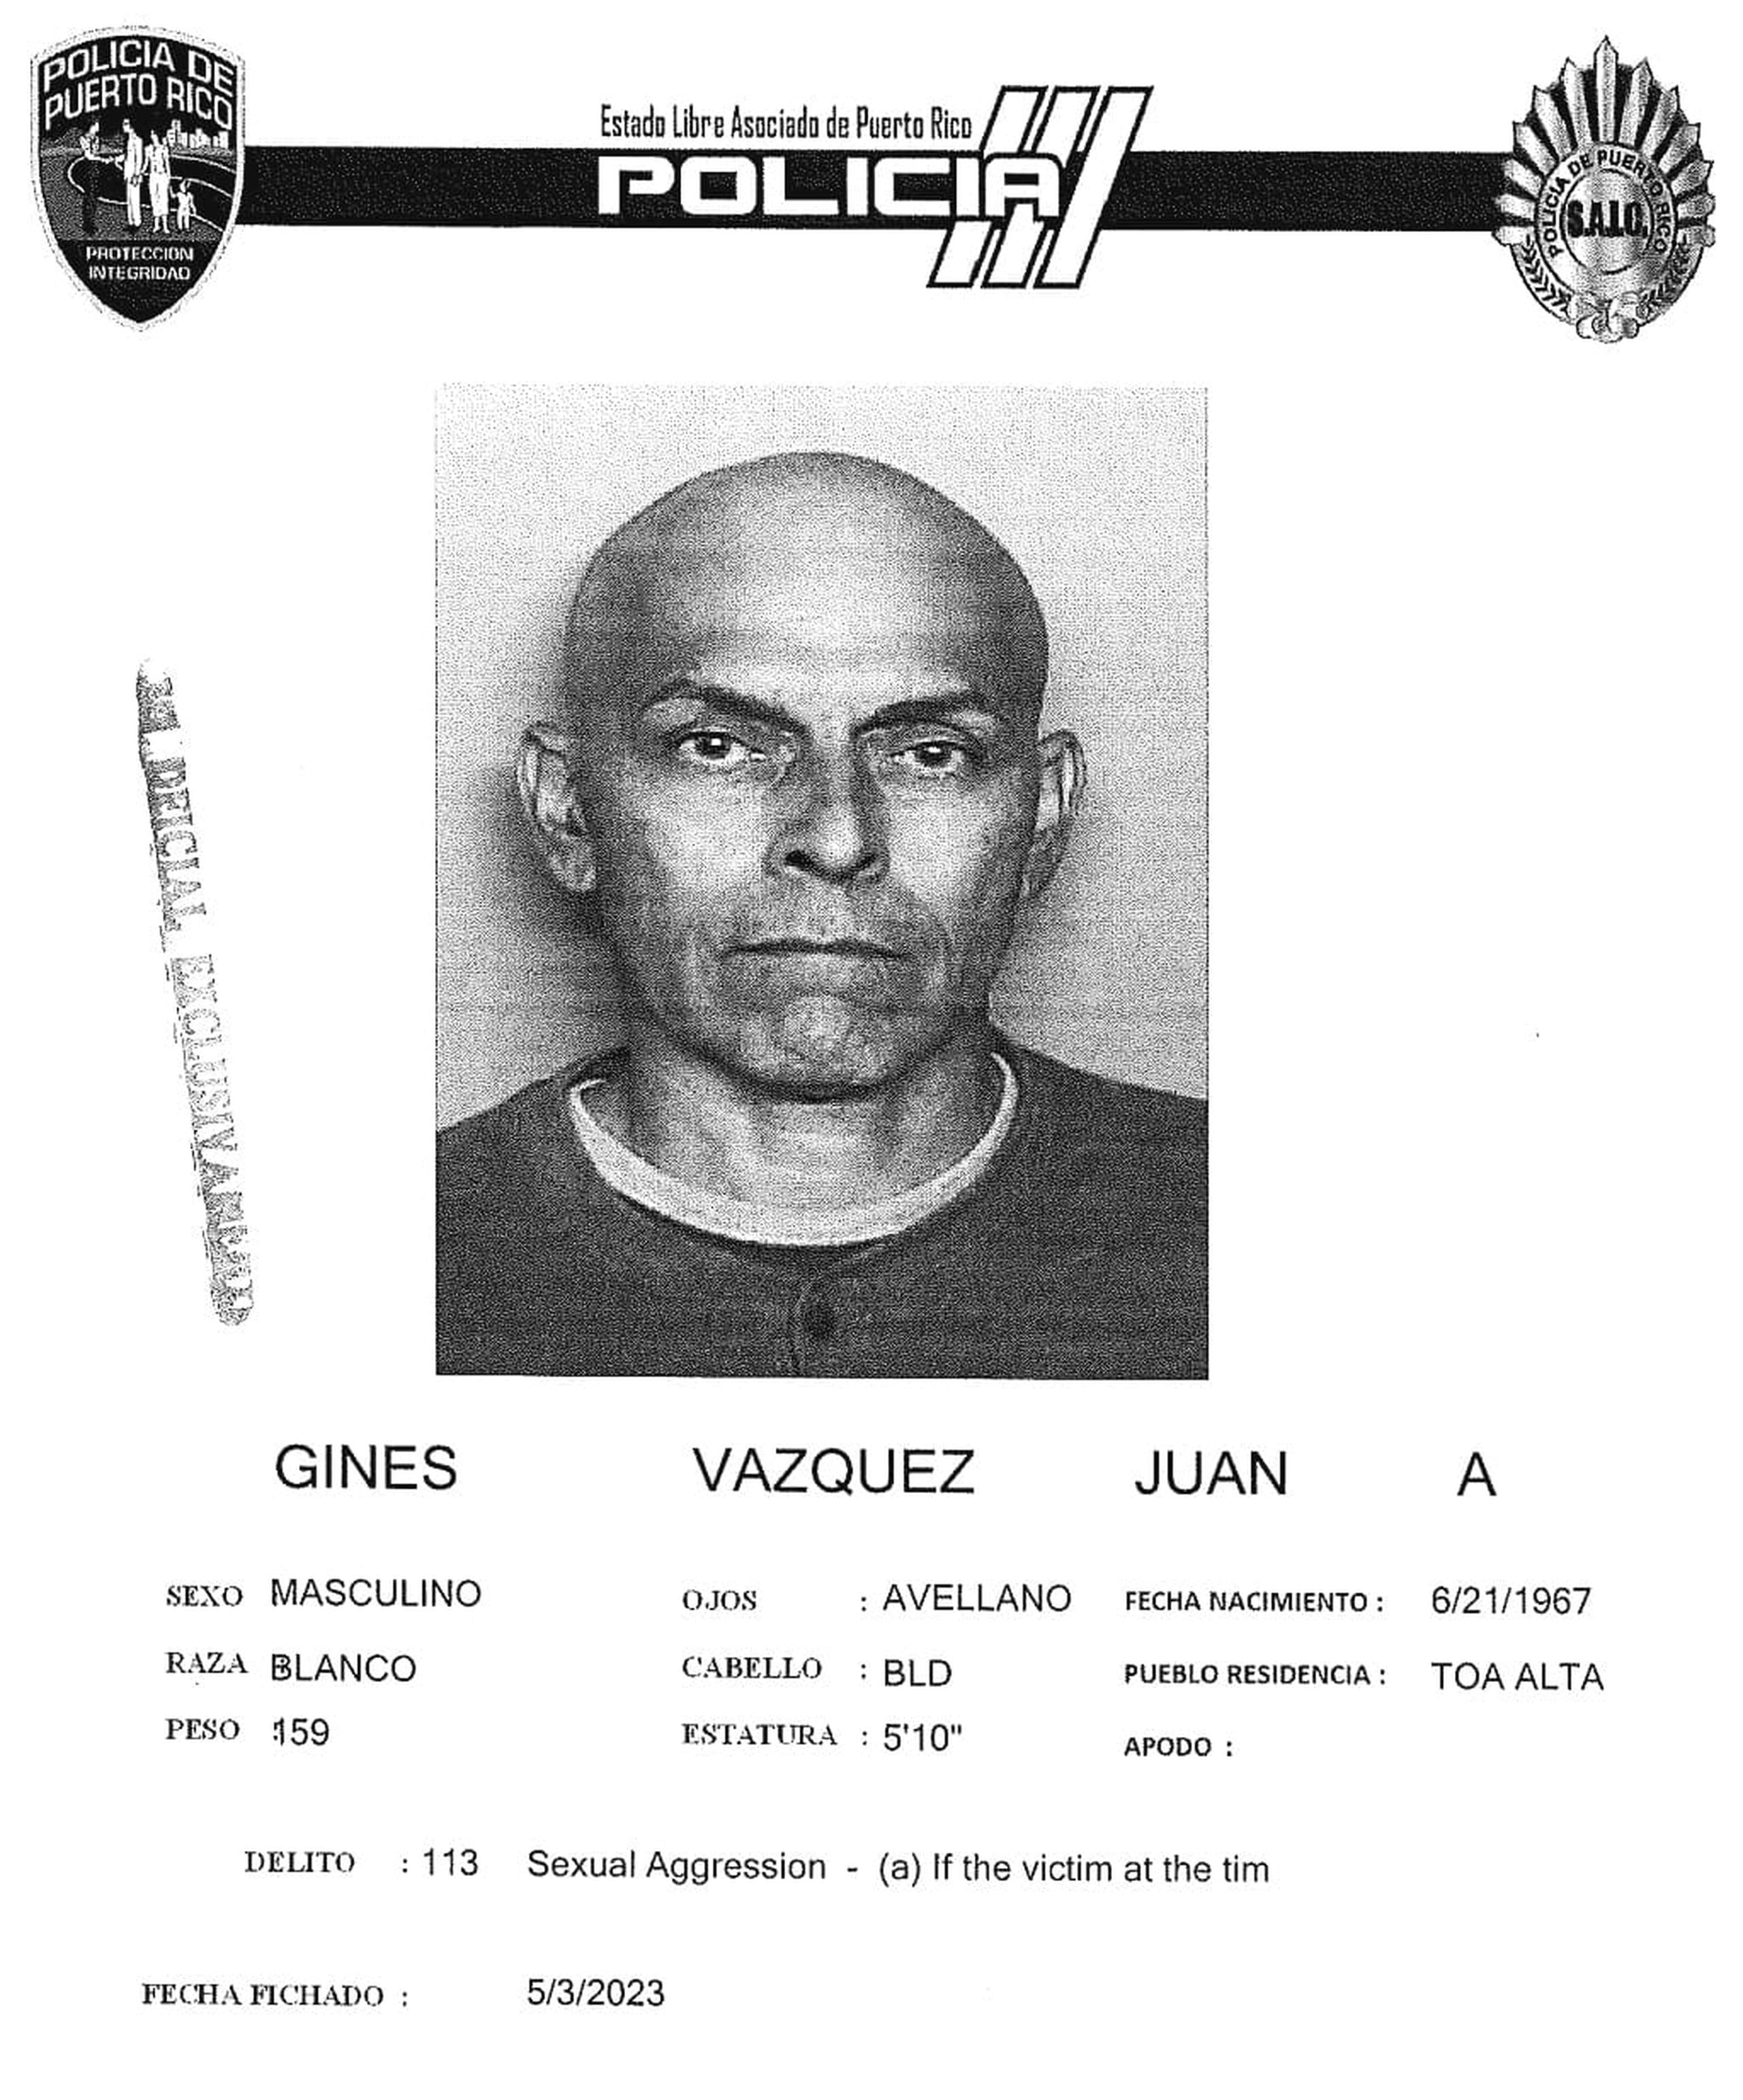 Juan A. Gines Vázquez enfrenta cargos por agresión sexual, actos lascivos y maltrato de menores.